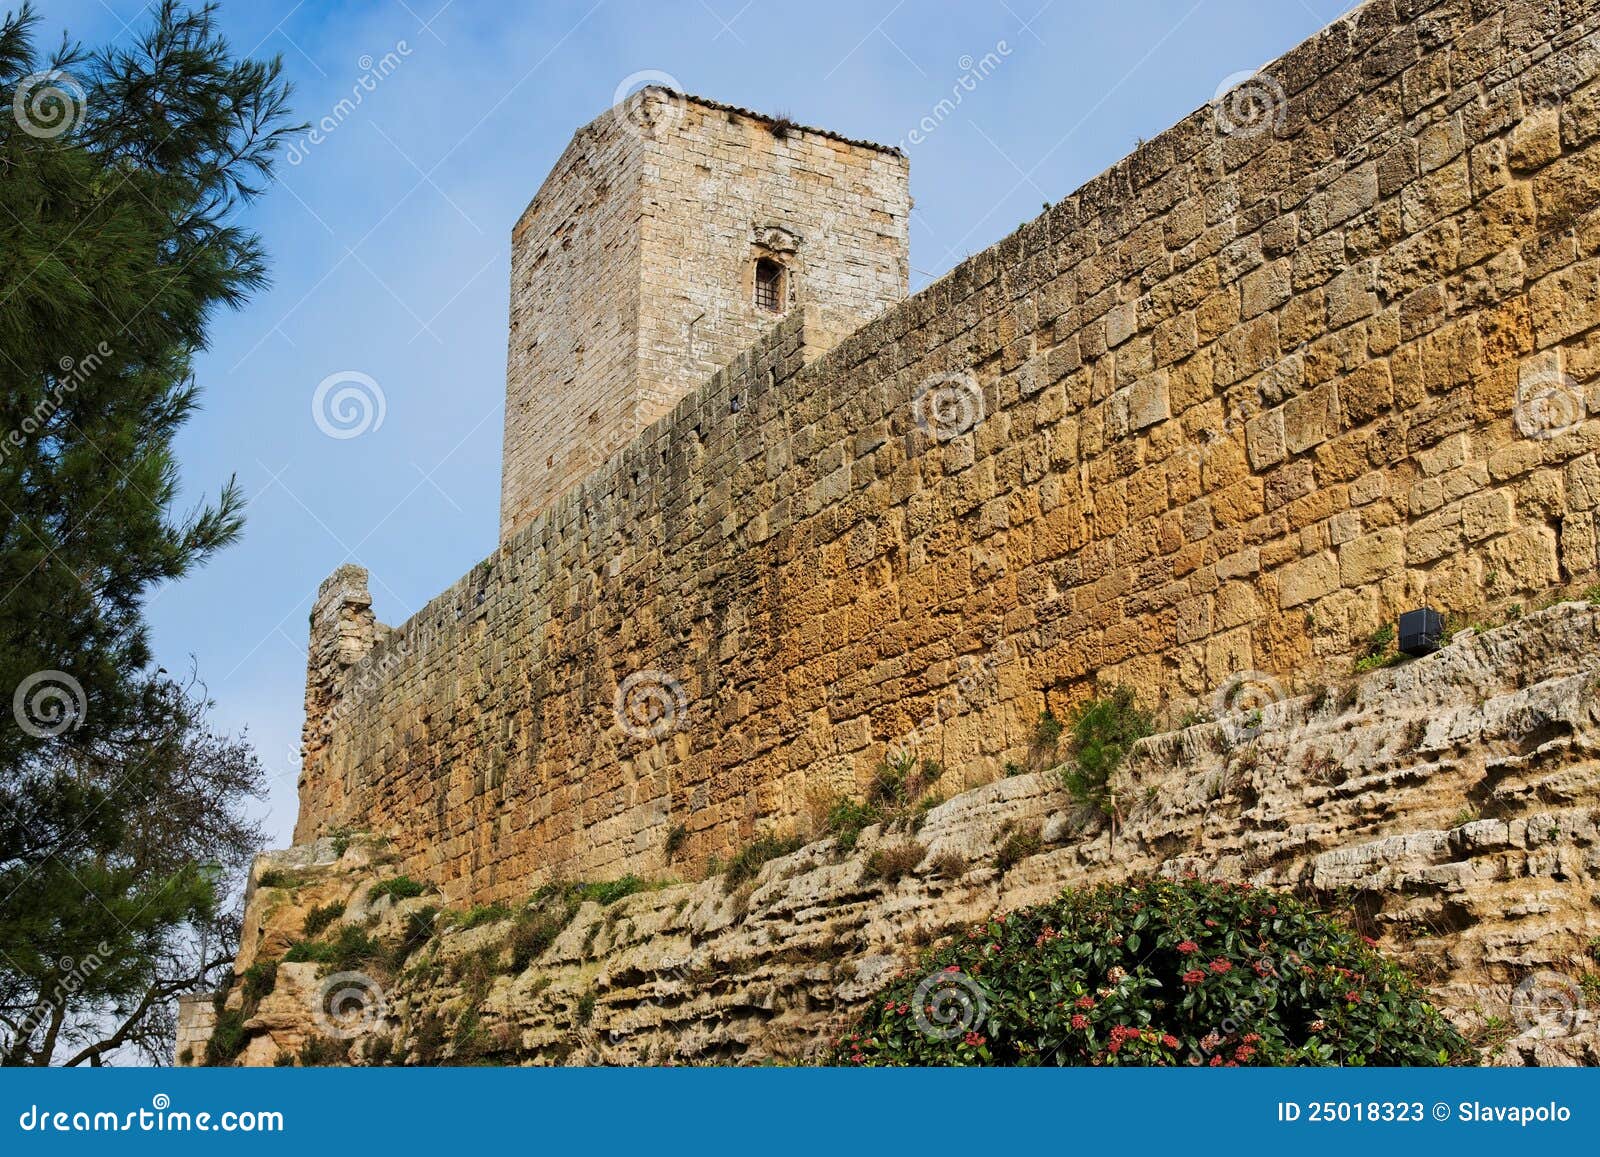 castello di lombardia medieval castle in enna, sic